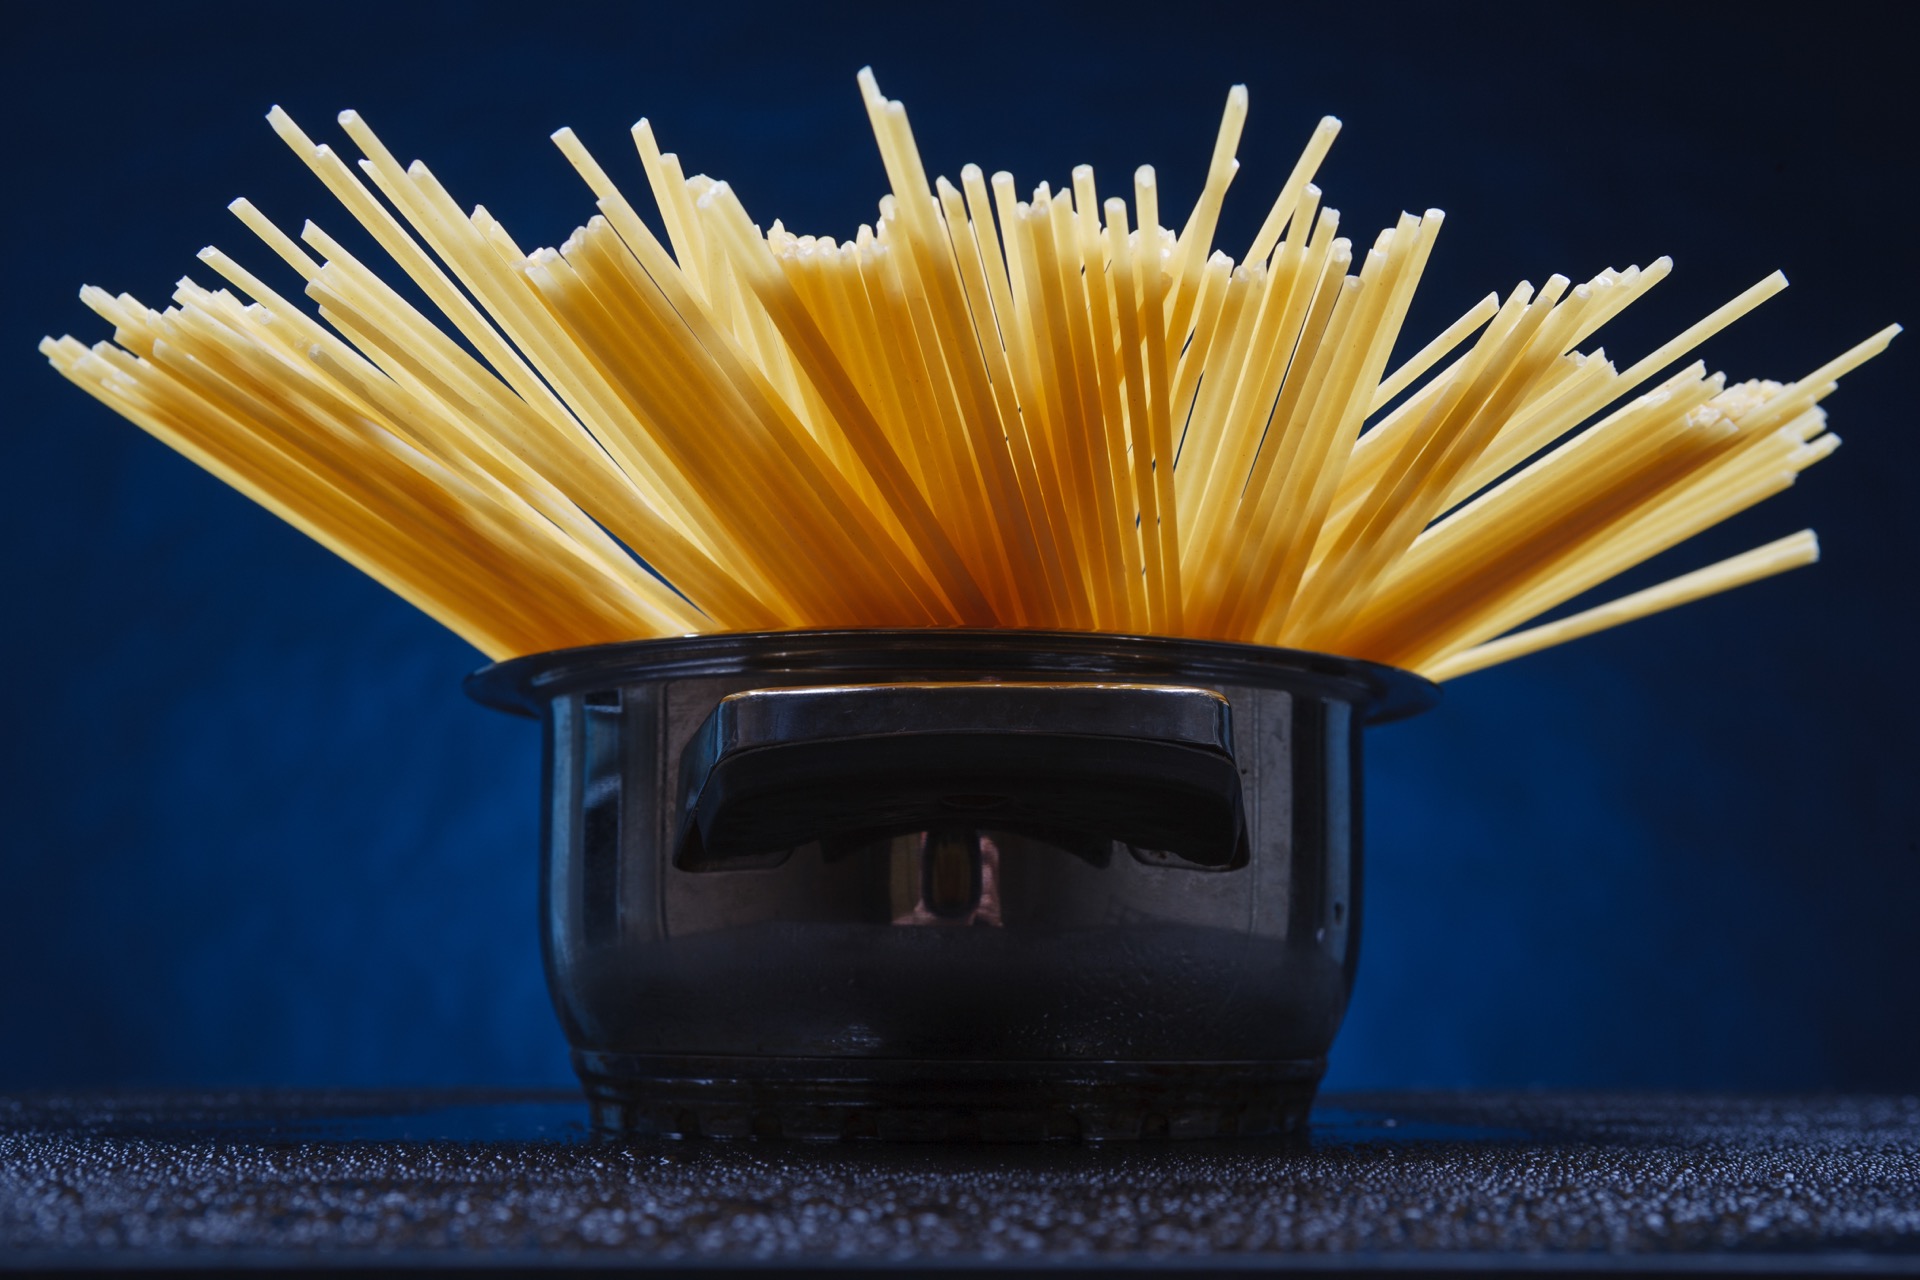 Le spaghetti fait l’objet d’un nombre impressionnant d’études scientifiques. © DimaP, Adobe Stock